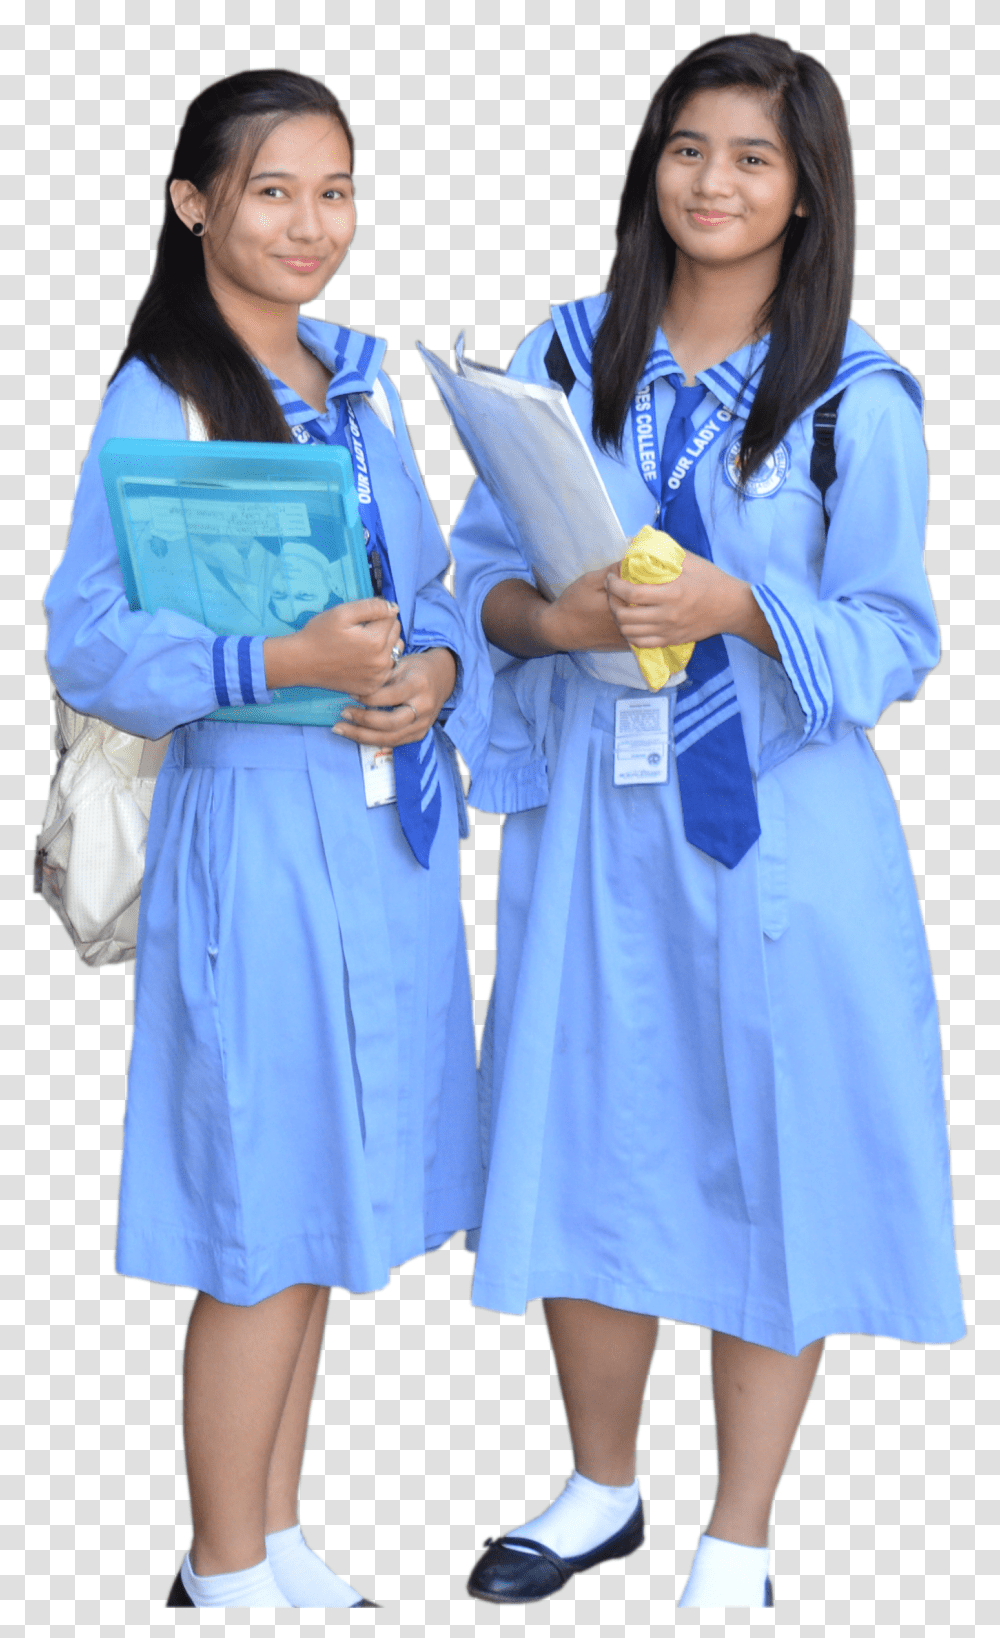 Our Lady Of Lourdes College Uniform, Shoe, Footwear, Person Transparent Png